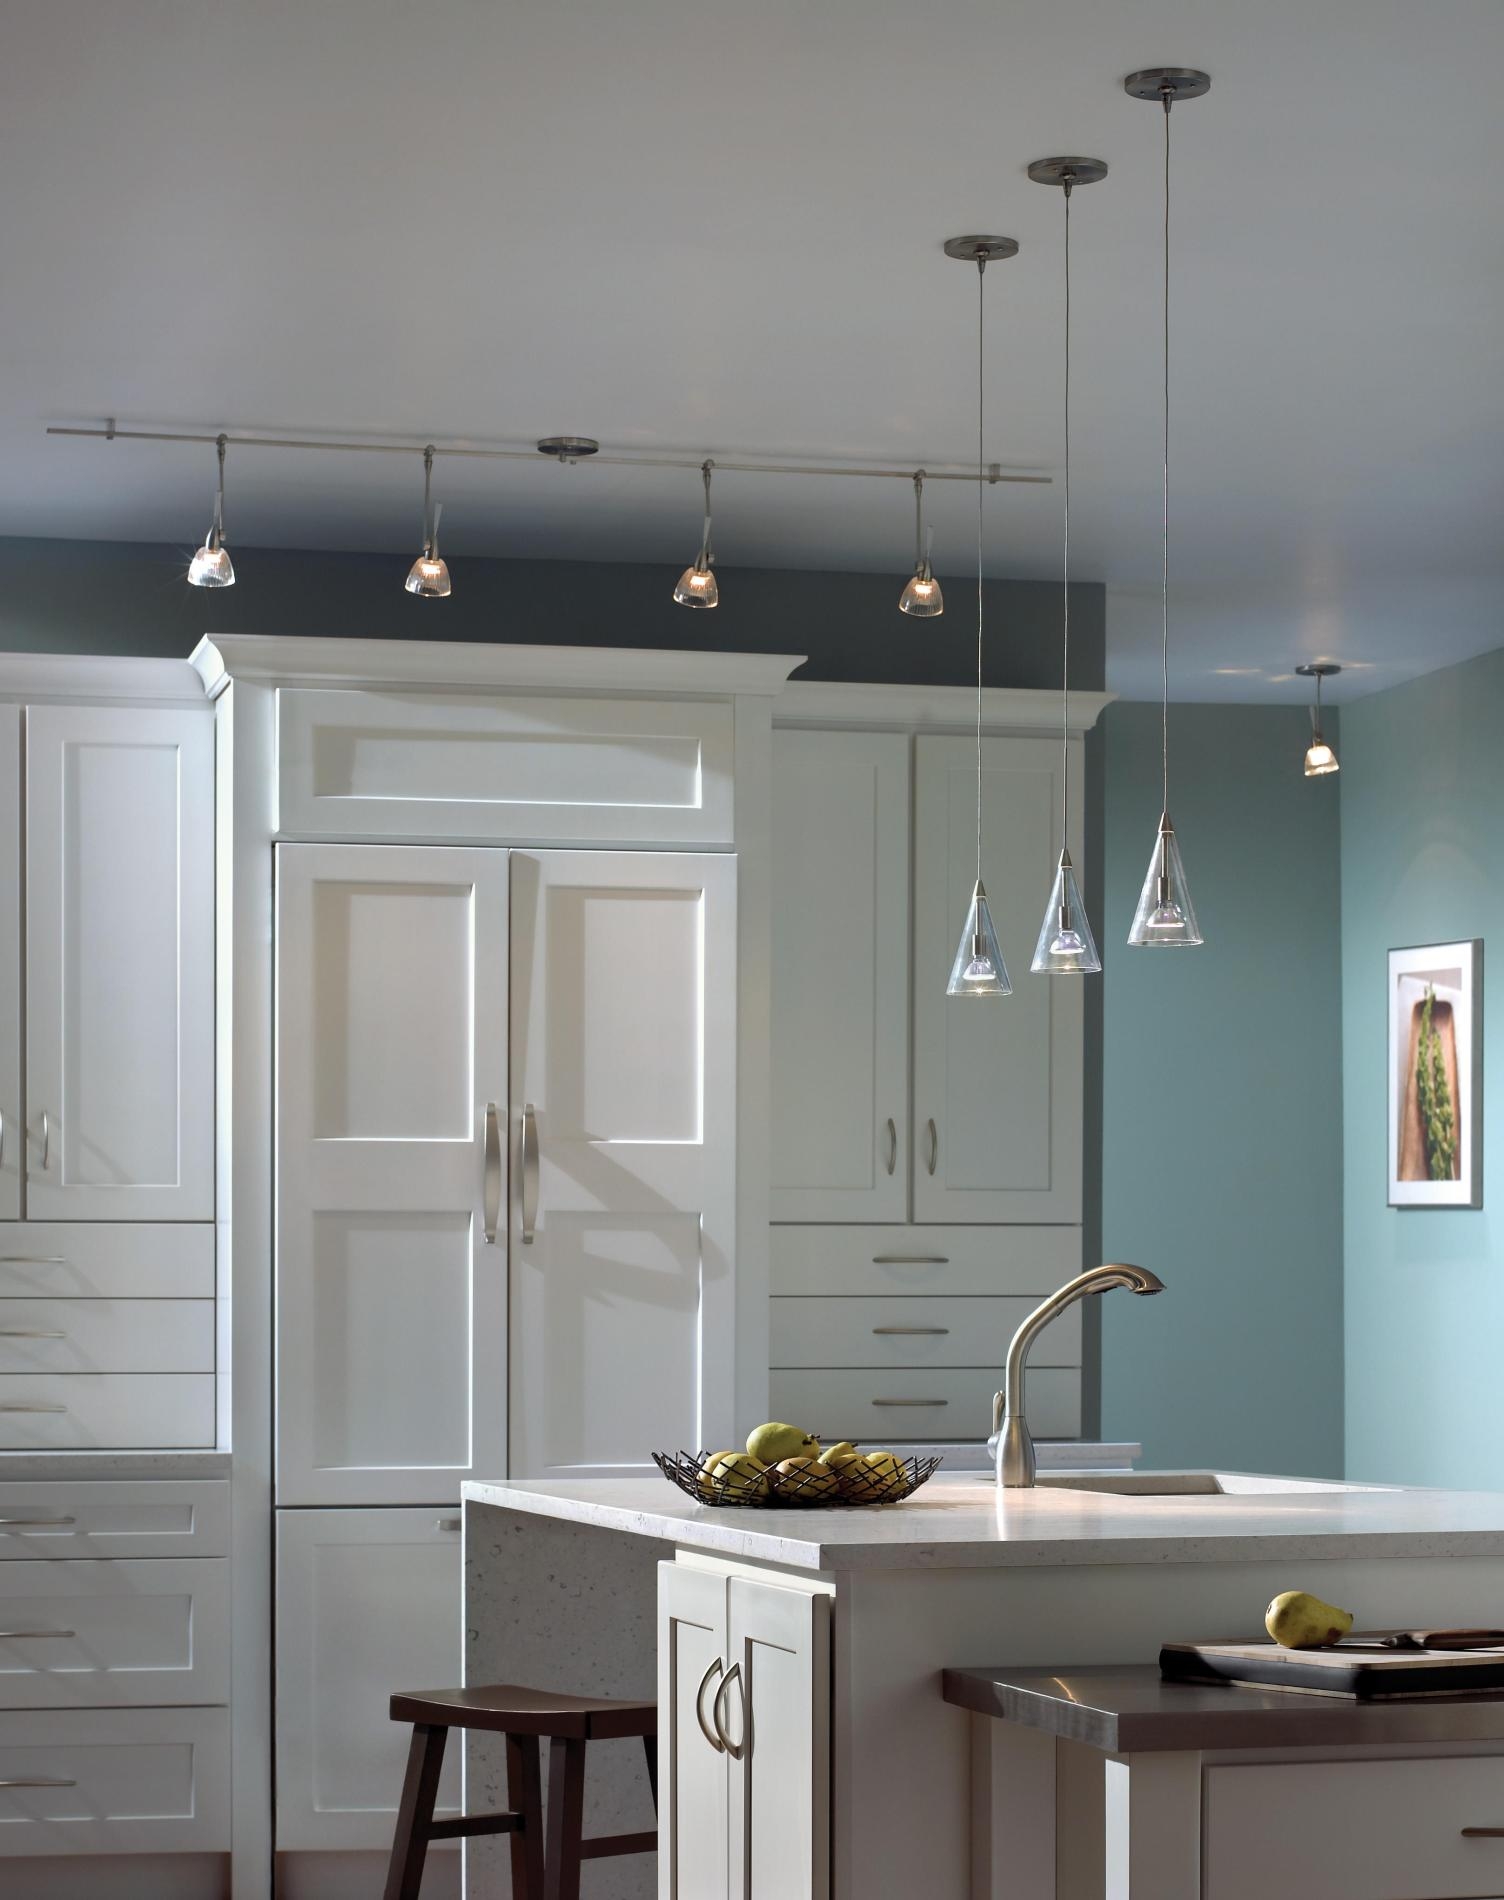 Best Light Bulbs For Kitchen Ceiling